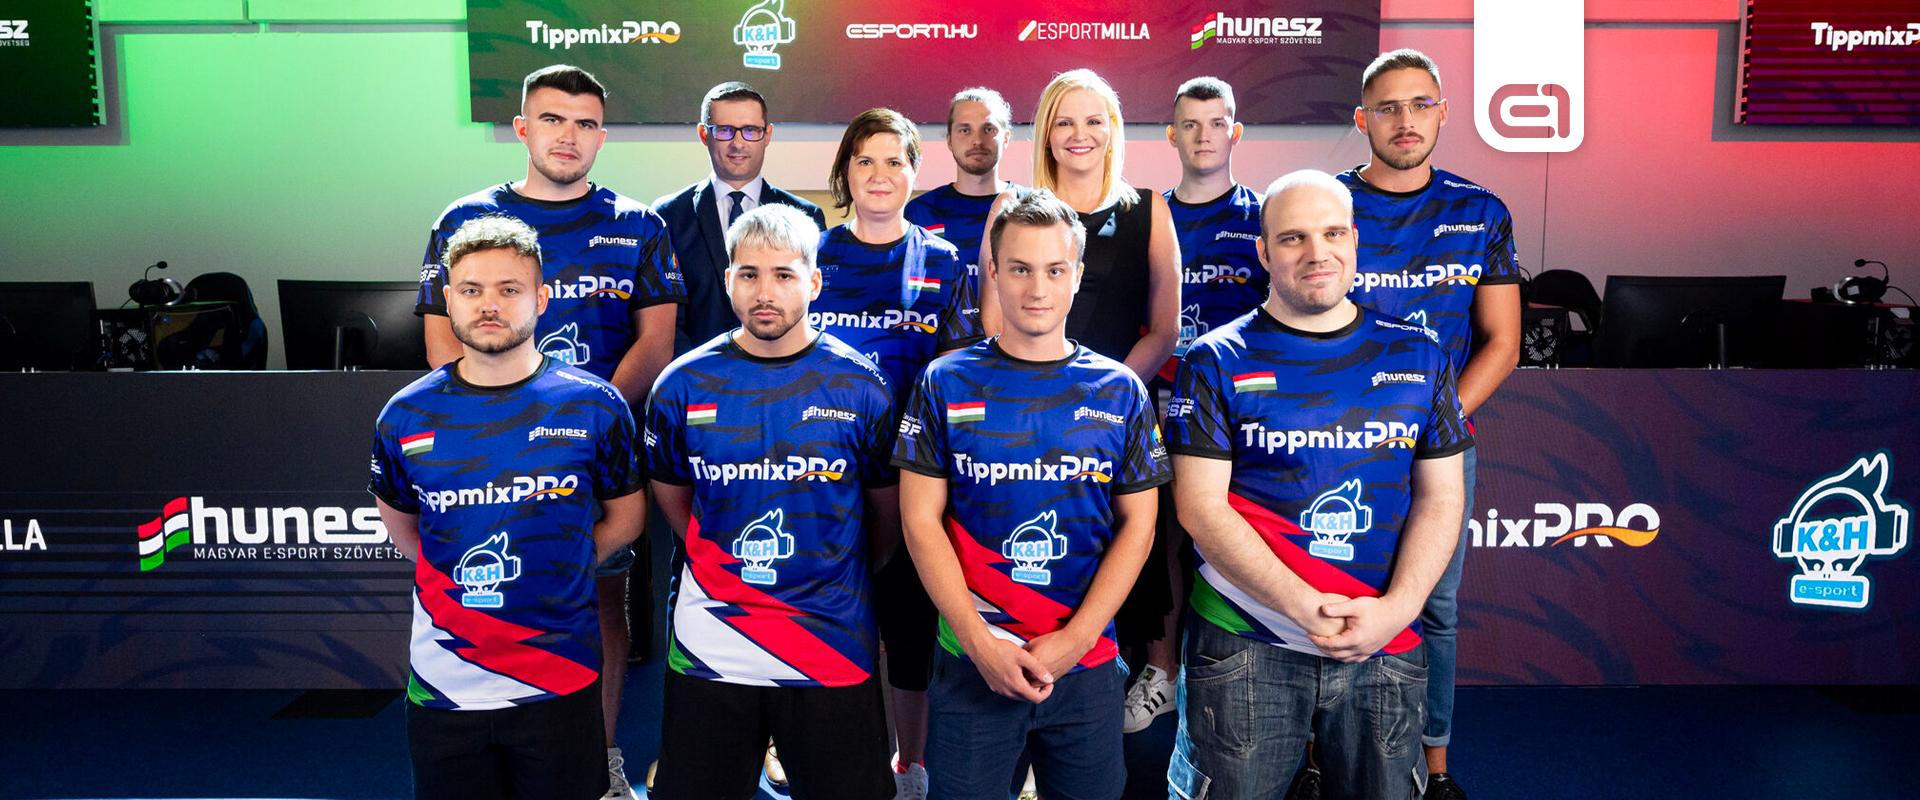 Harcba indulnak: Kihirdették a Magyar E-sport Válogatott világbajnoki játékoskeretét